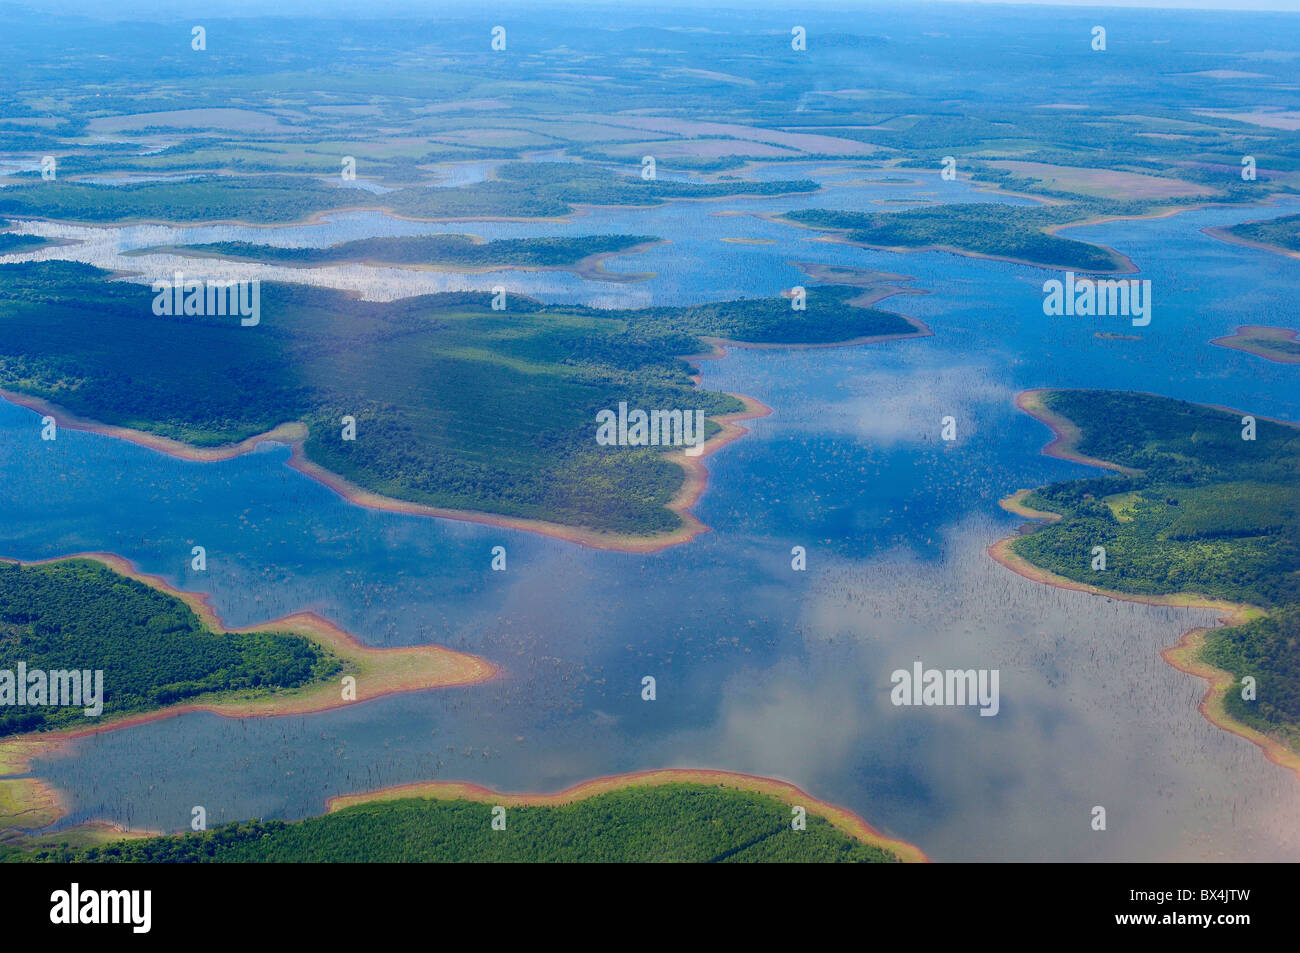 Vue aérienne sur les rivières Puerto Iguazu Misiones Argentine Amérique du Sud Banque D'Images